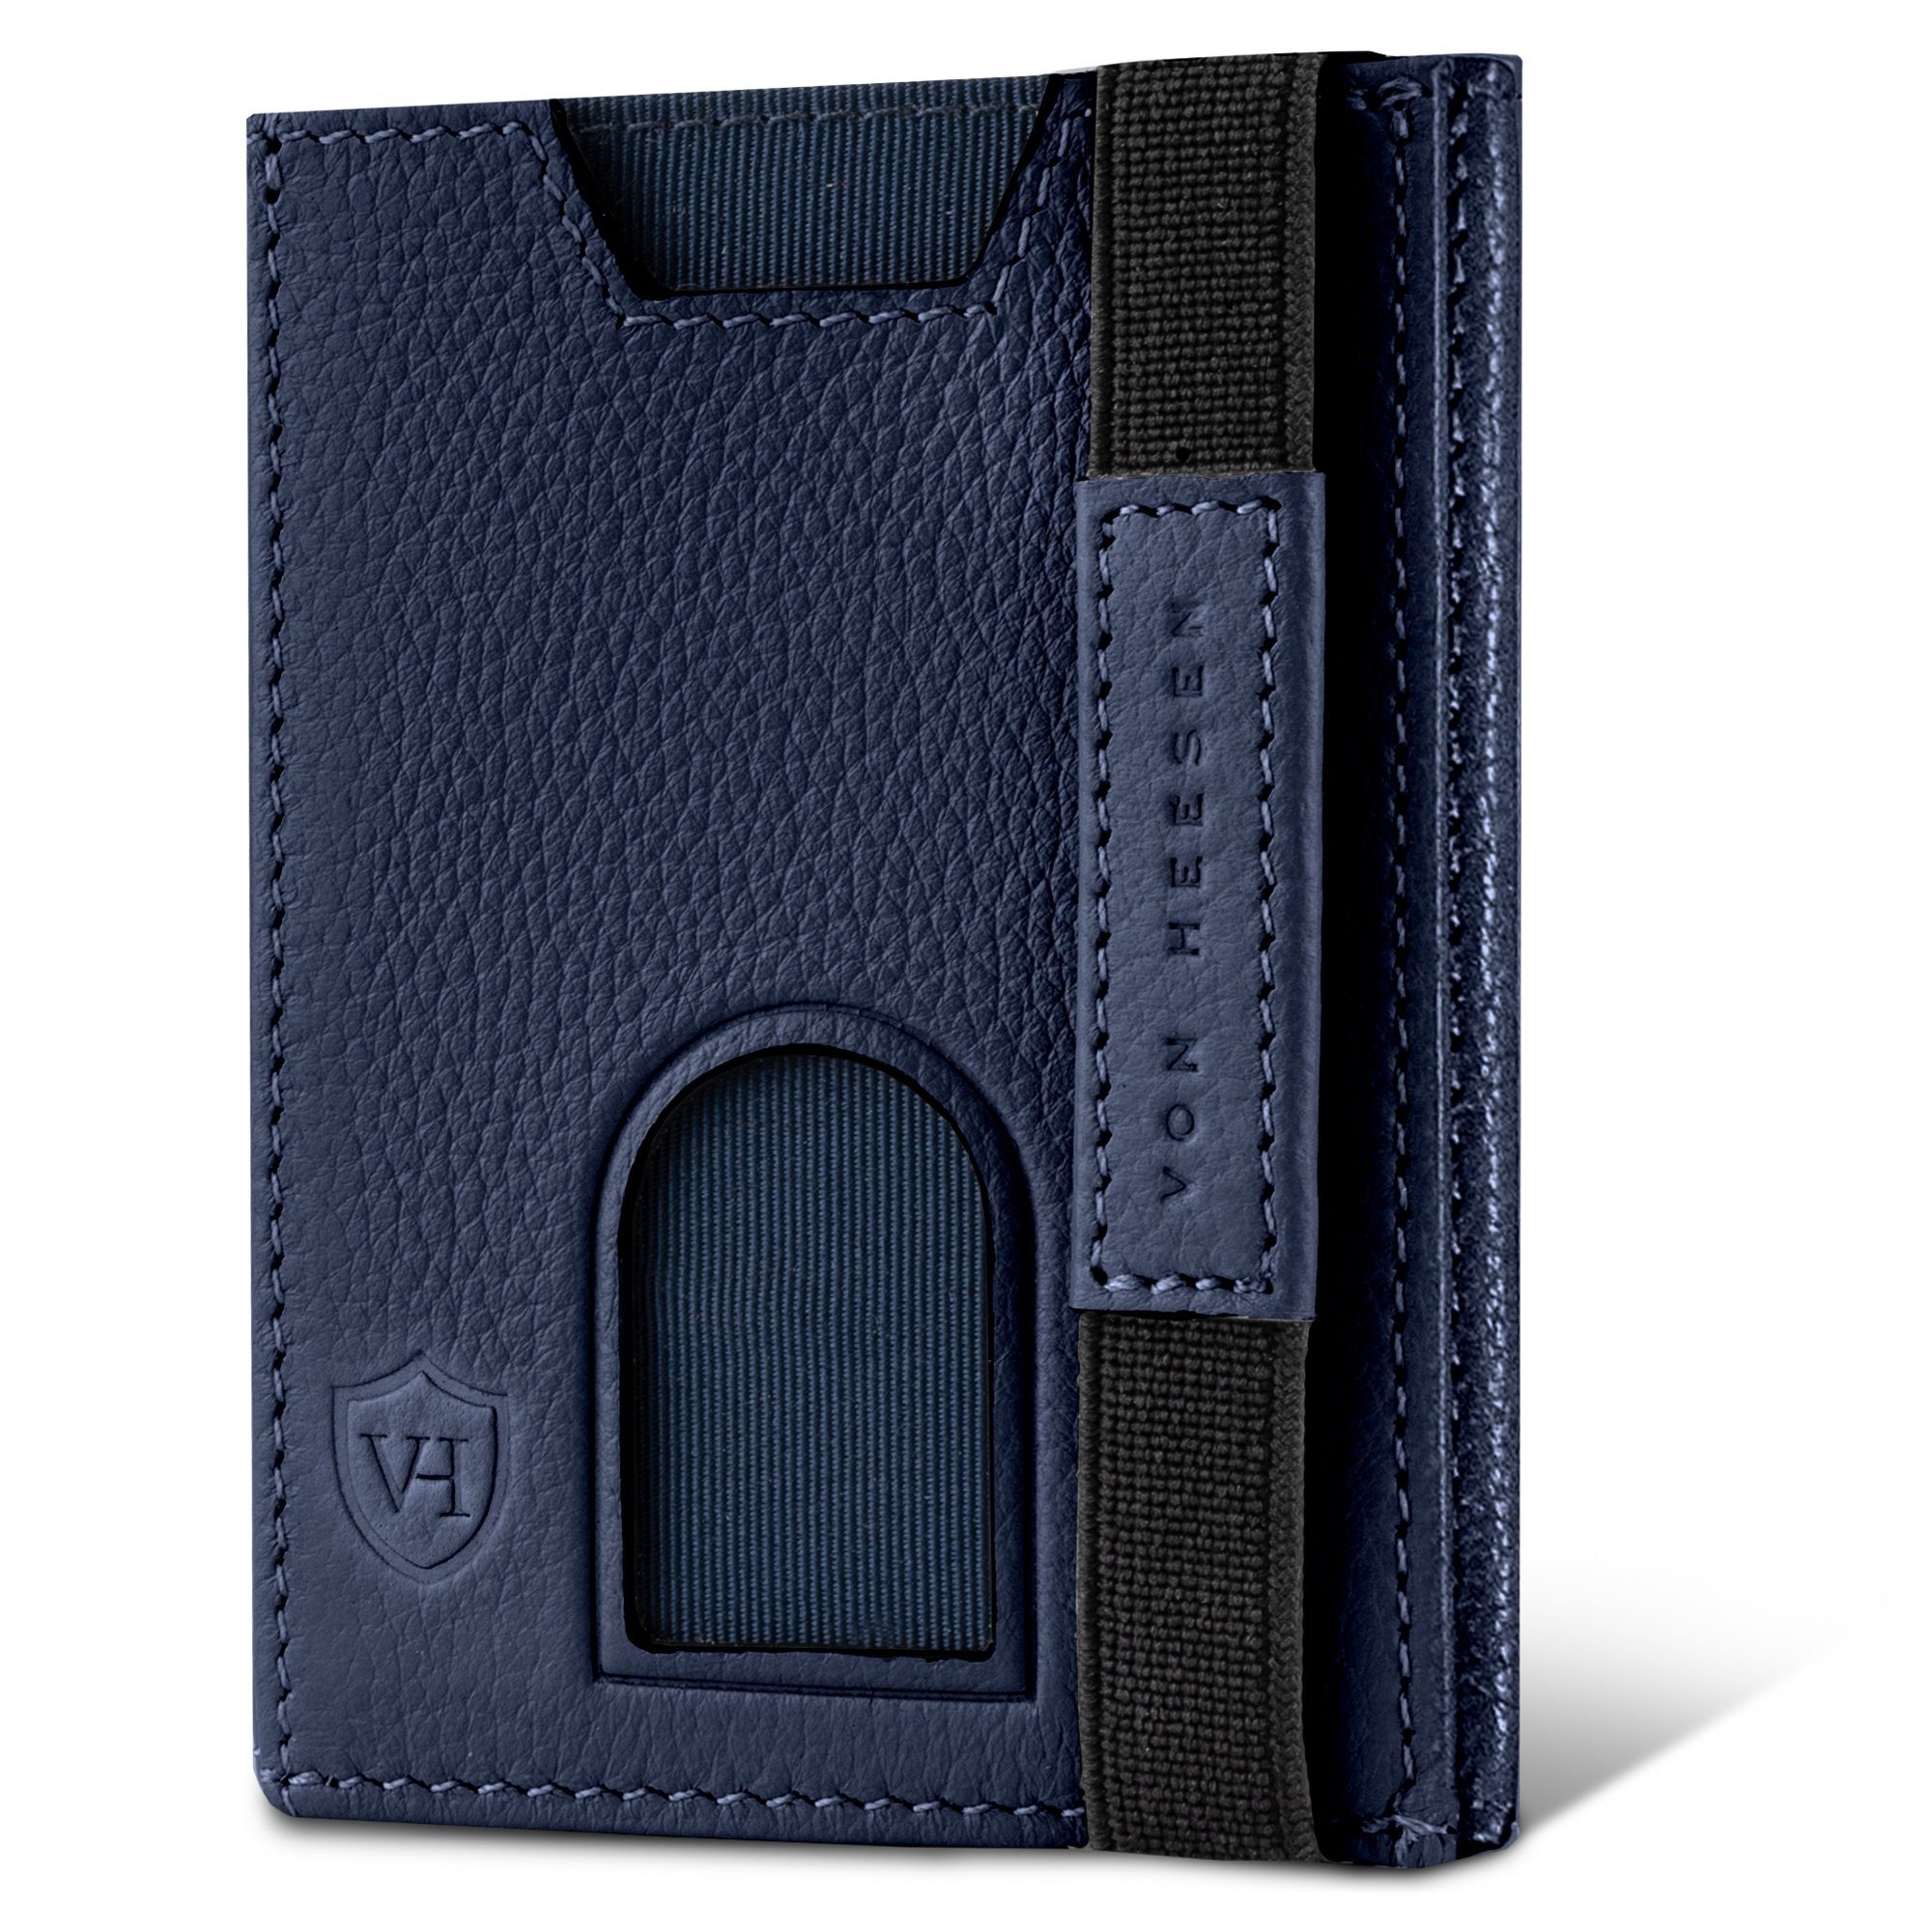 mit Portemonnaie inkl. Blau & VON Geschenkbox Mini-Münzfach, Slim Geldbörse Geldbeutel RFID-Schutz Wallet Wallet 5 & HEESEN Kartenfächer Whizz